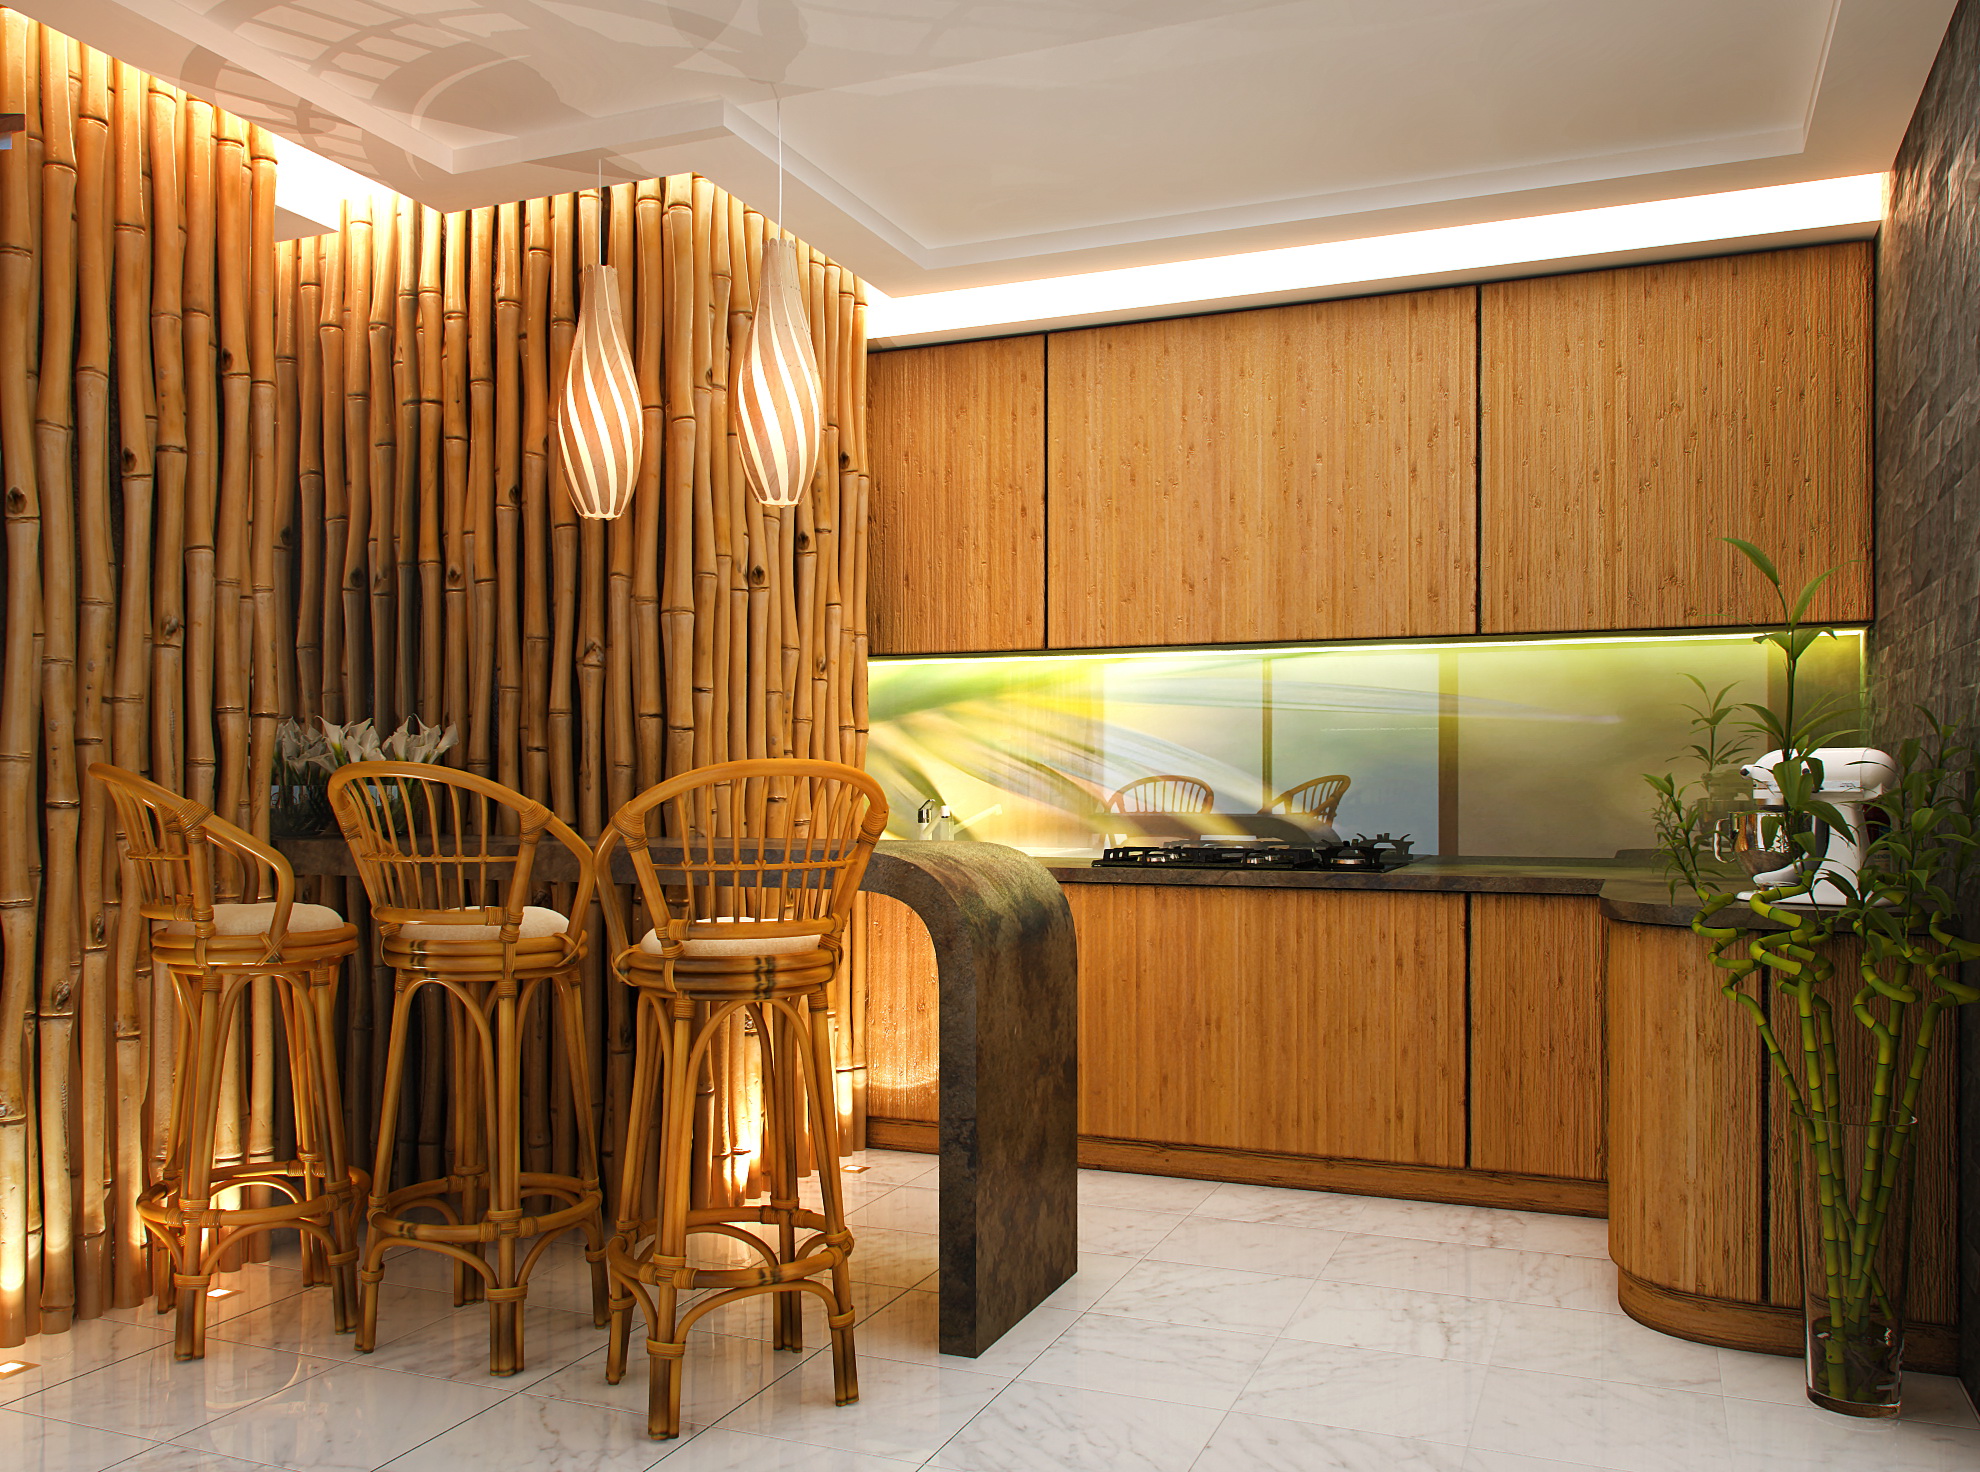 plafond met bamboe in het interieur van de keuken